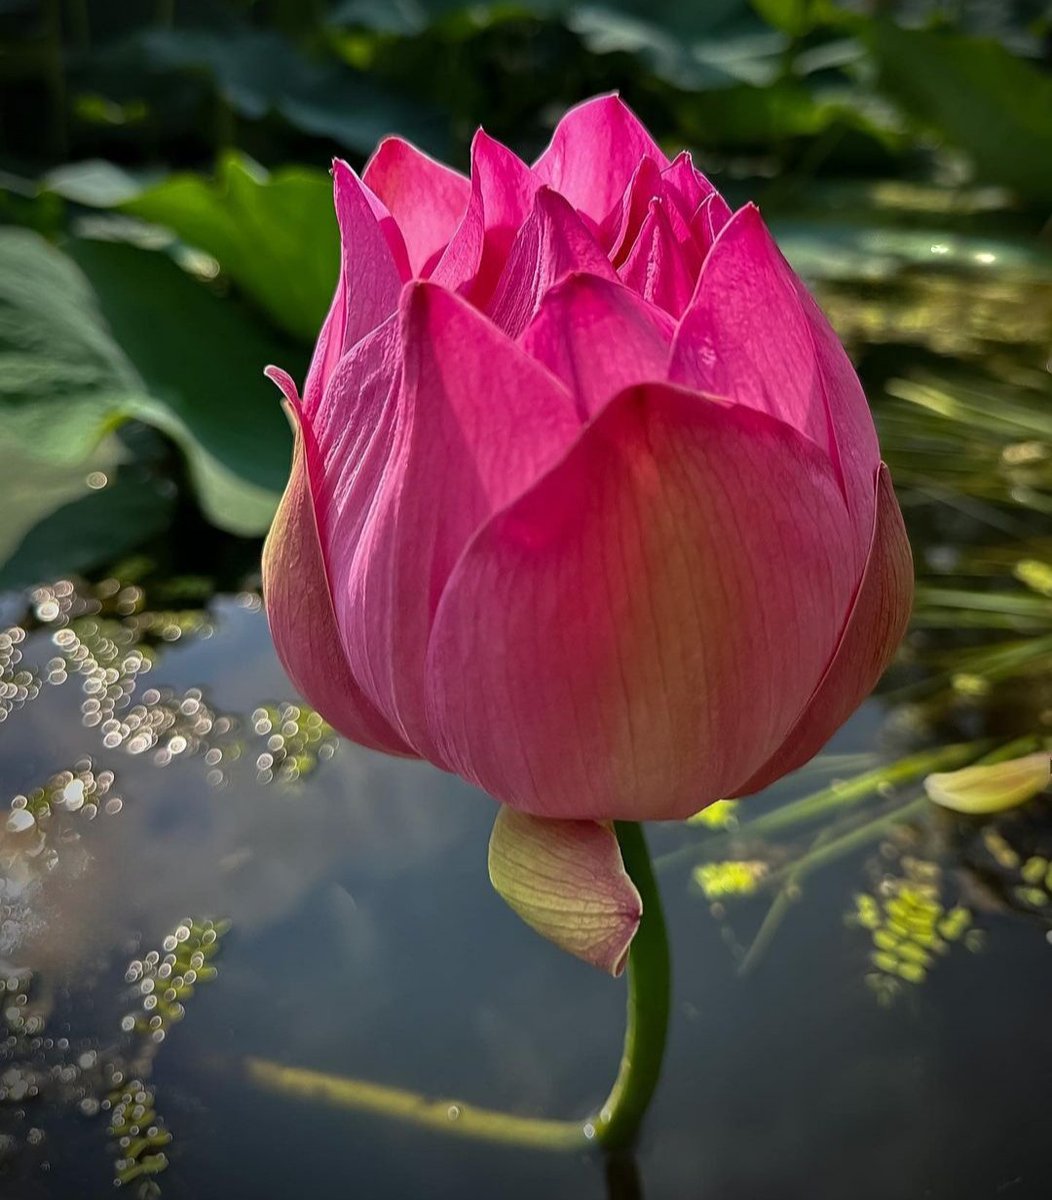 #summertime #flowers #lotuses #water #lilies #swamp #beautiful